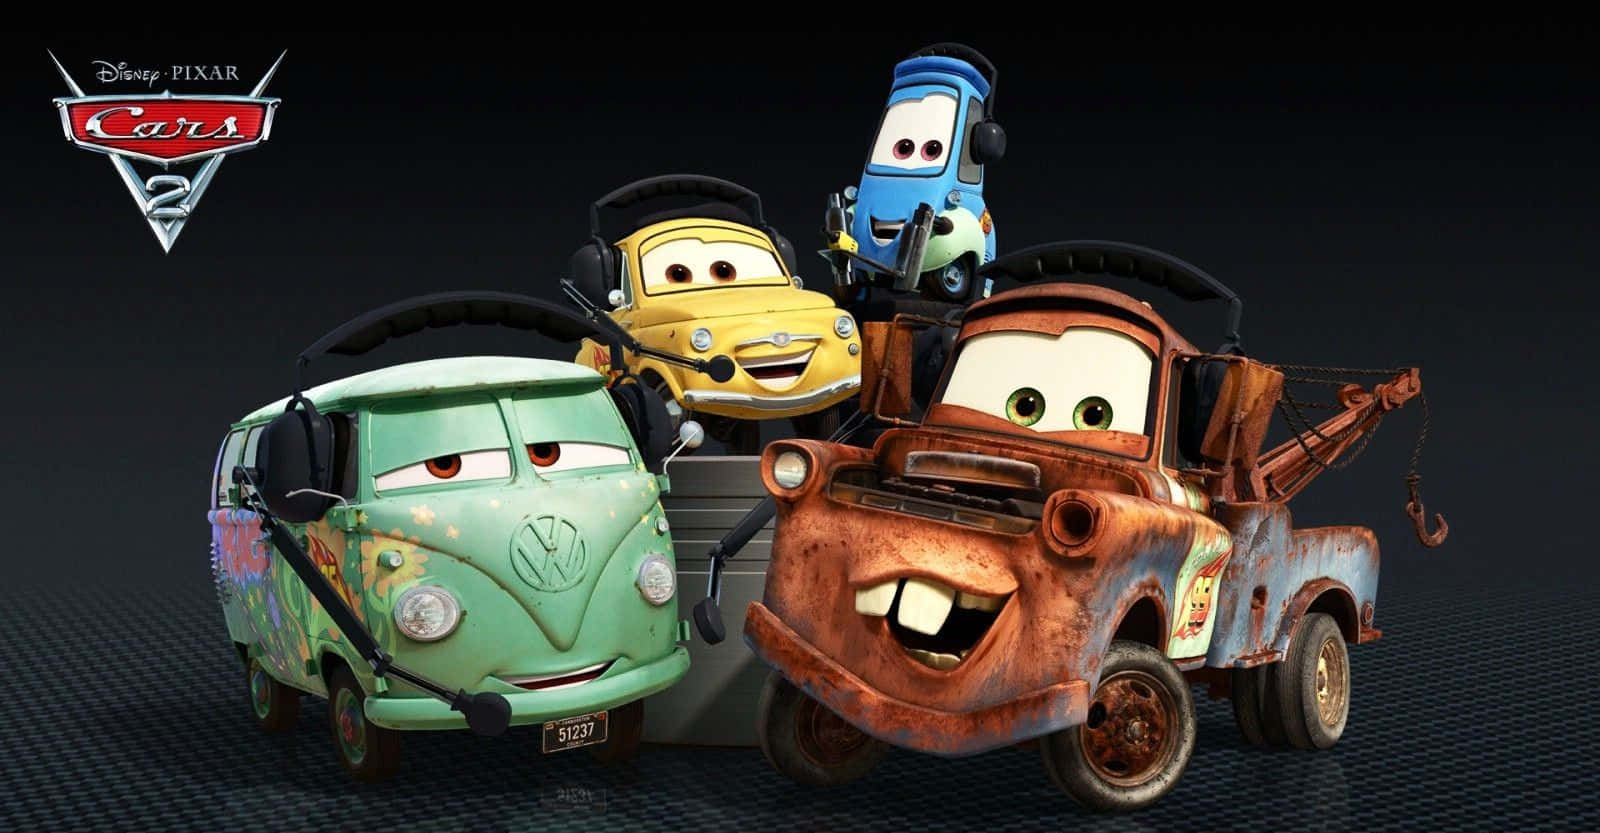 Enkapløb Til Målstregen: Pixars Biler 2.